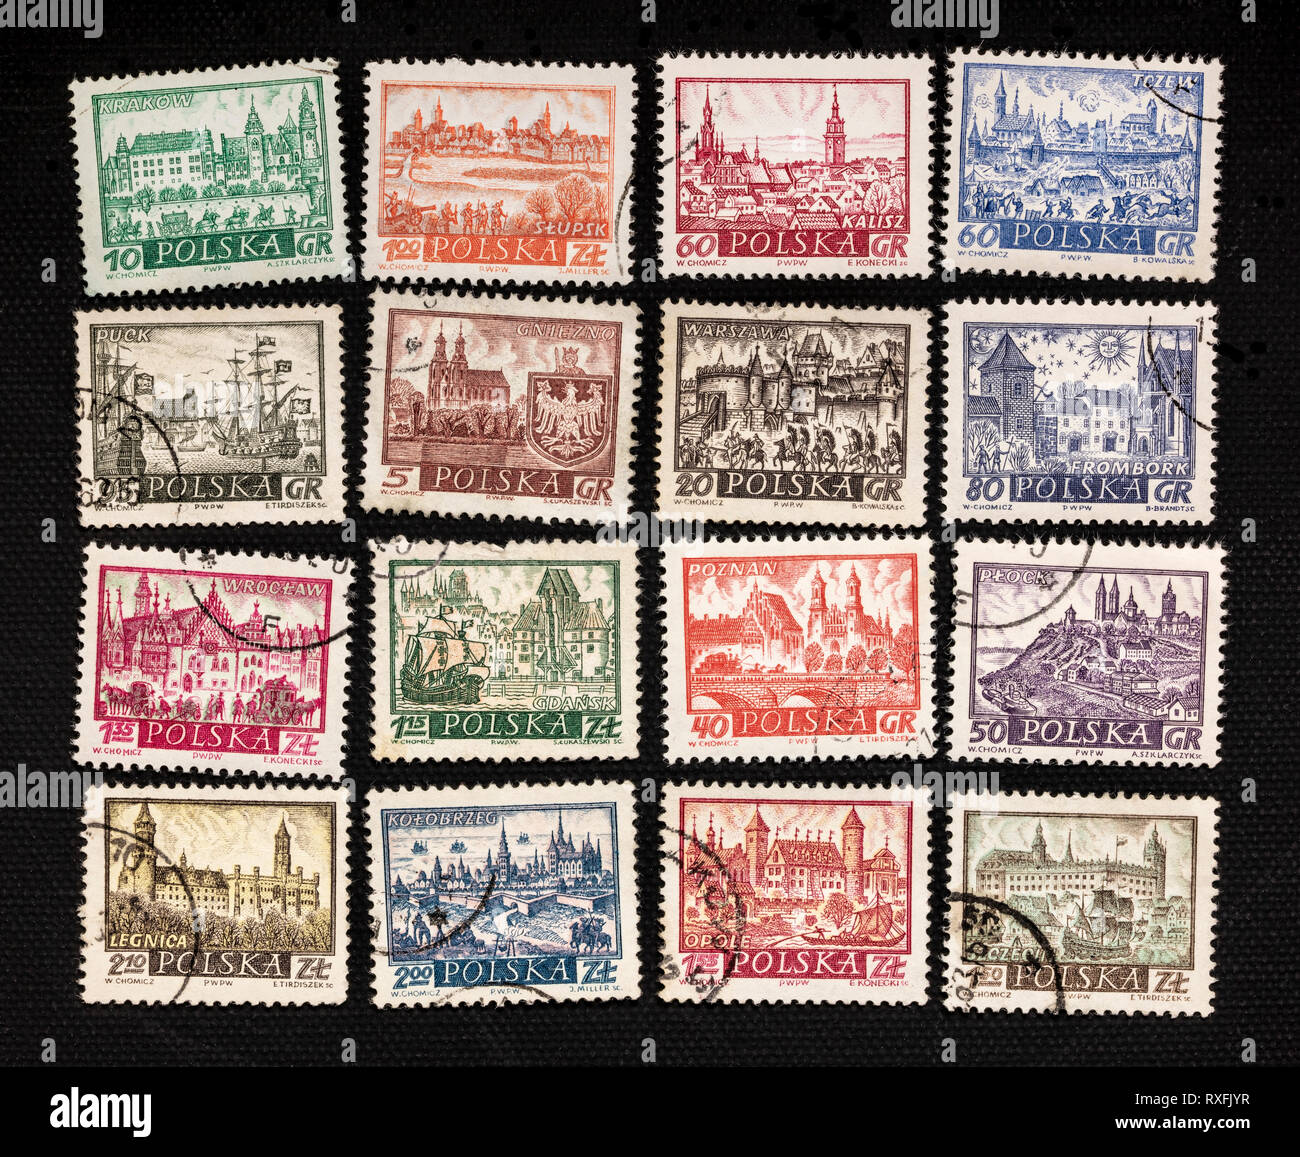 Historische Darstellung der berühmten polnischen Städte - eine Reihe von  Vintage caceled post Briefmarken auf schwarzen Leinwand Stockfotografie -  Alamy